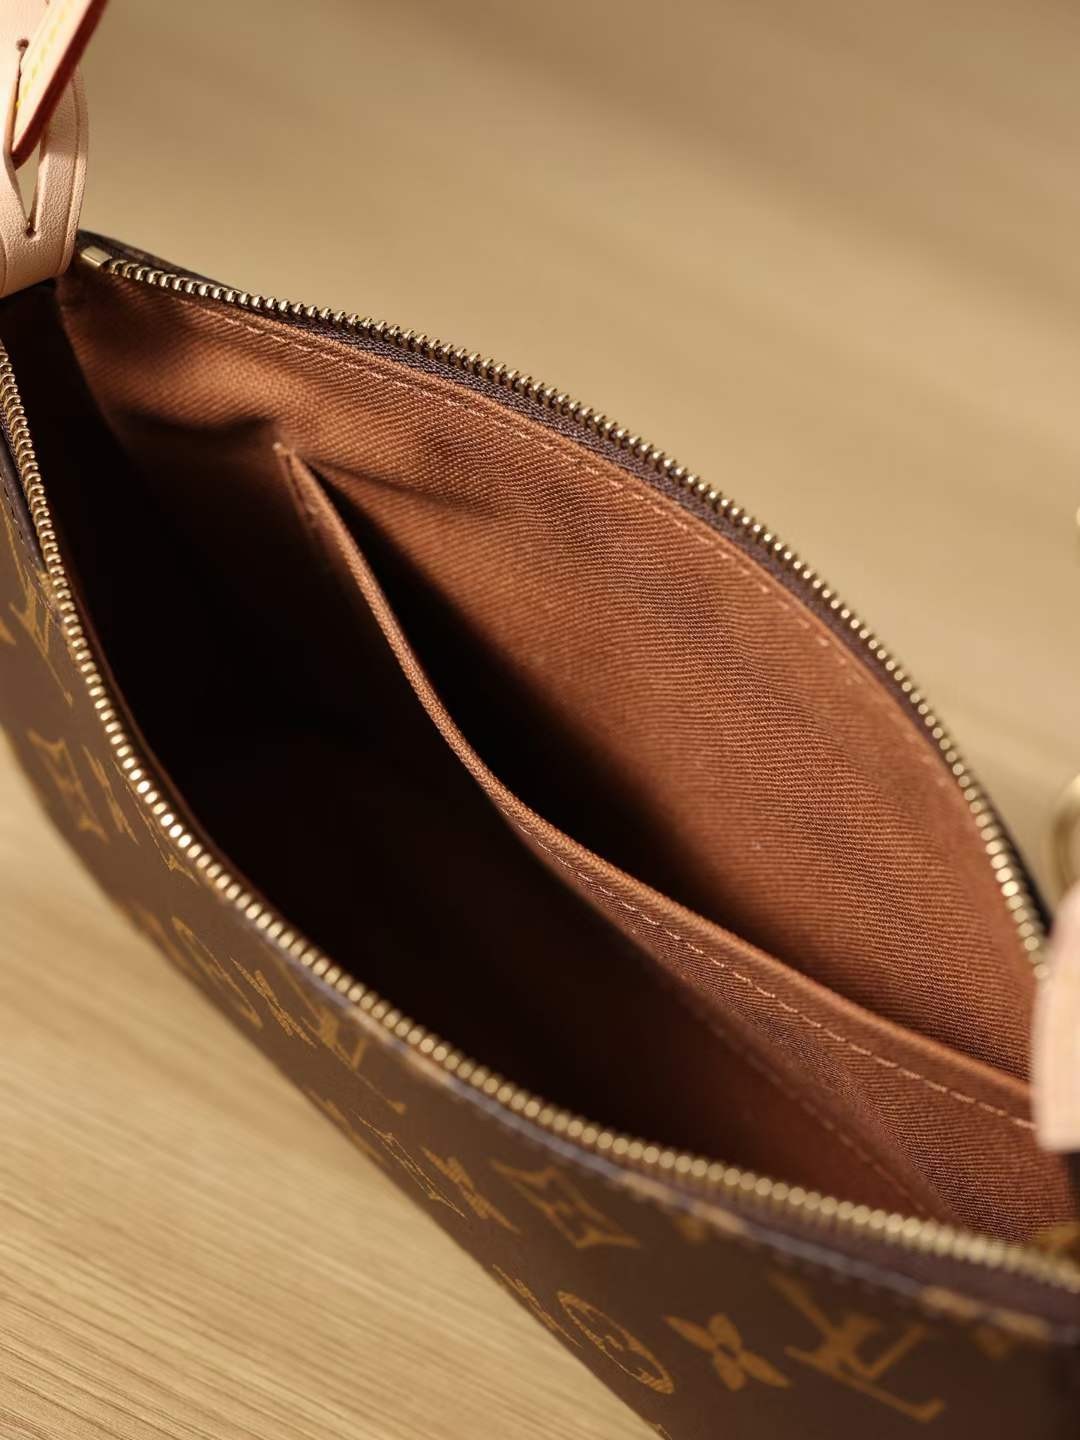 Louis Vuitton M40712 Pochette Accessoires 23.5 x 13.5 x 4 cm Inside pocket detail (2022 Special)-Best Quality Fake Louis Vuitton Bag Online Store, Replica designer bag ru